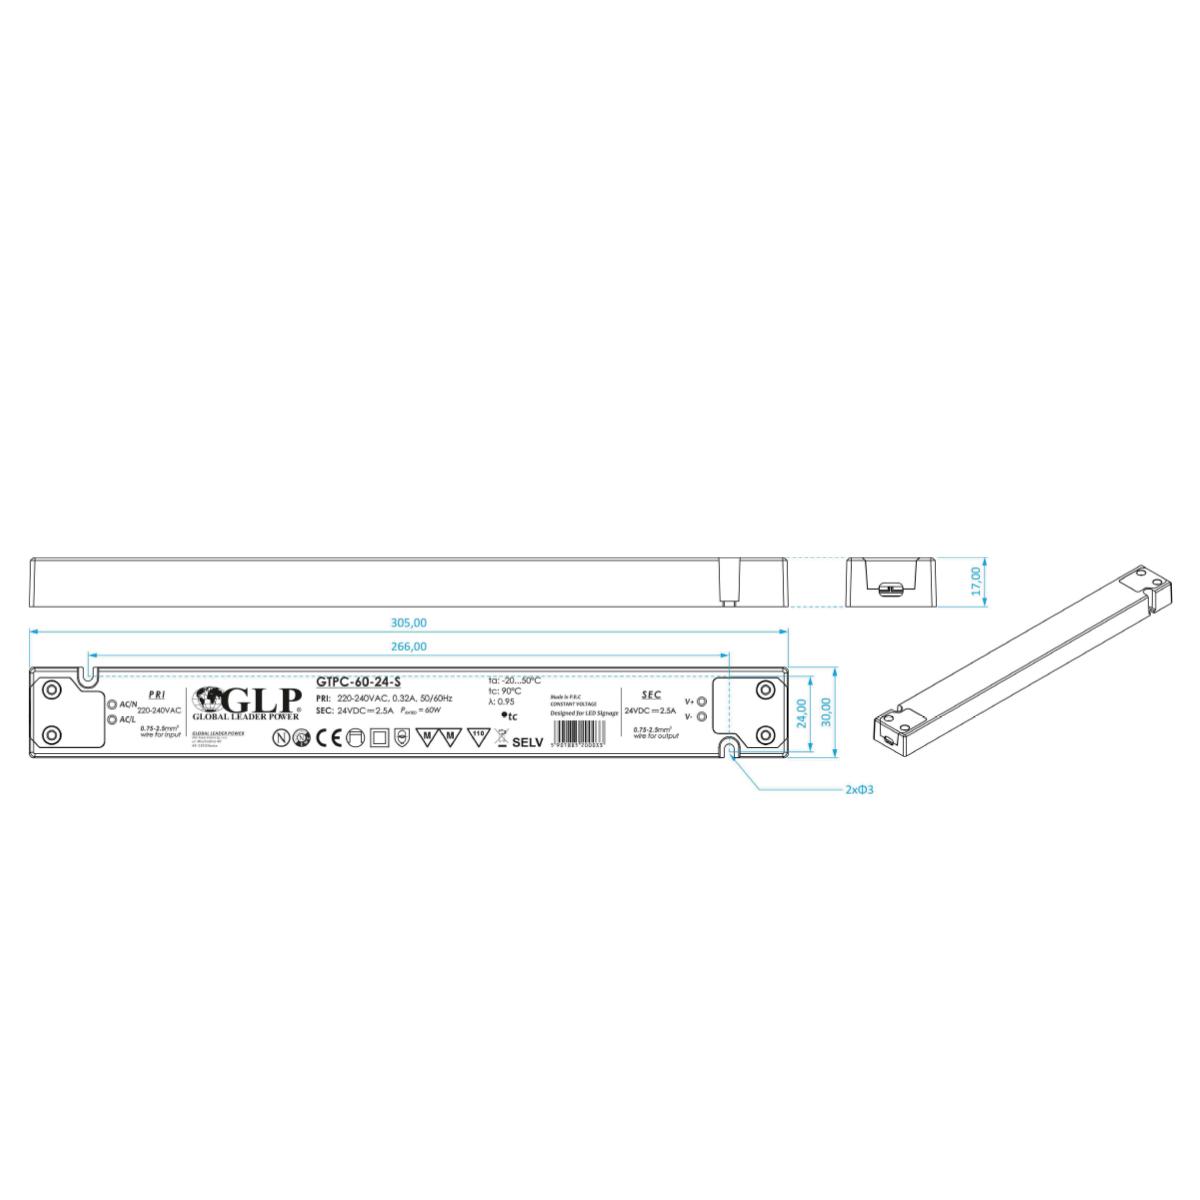 GLP GTPC-60-12-S LED Netzteil extrem flach für Möbeleinbau 60W 12V 5A IP20 Schaltnetzteil CV